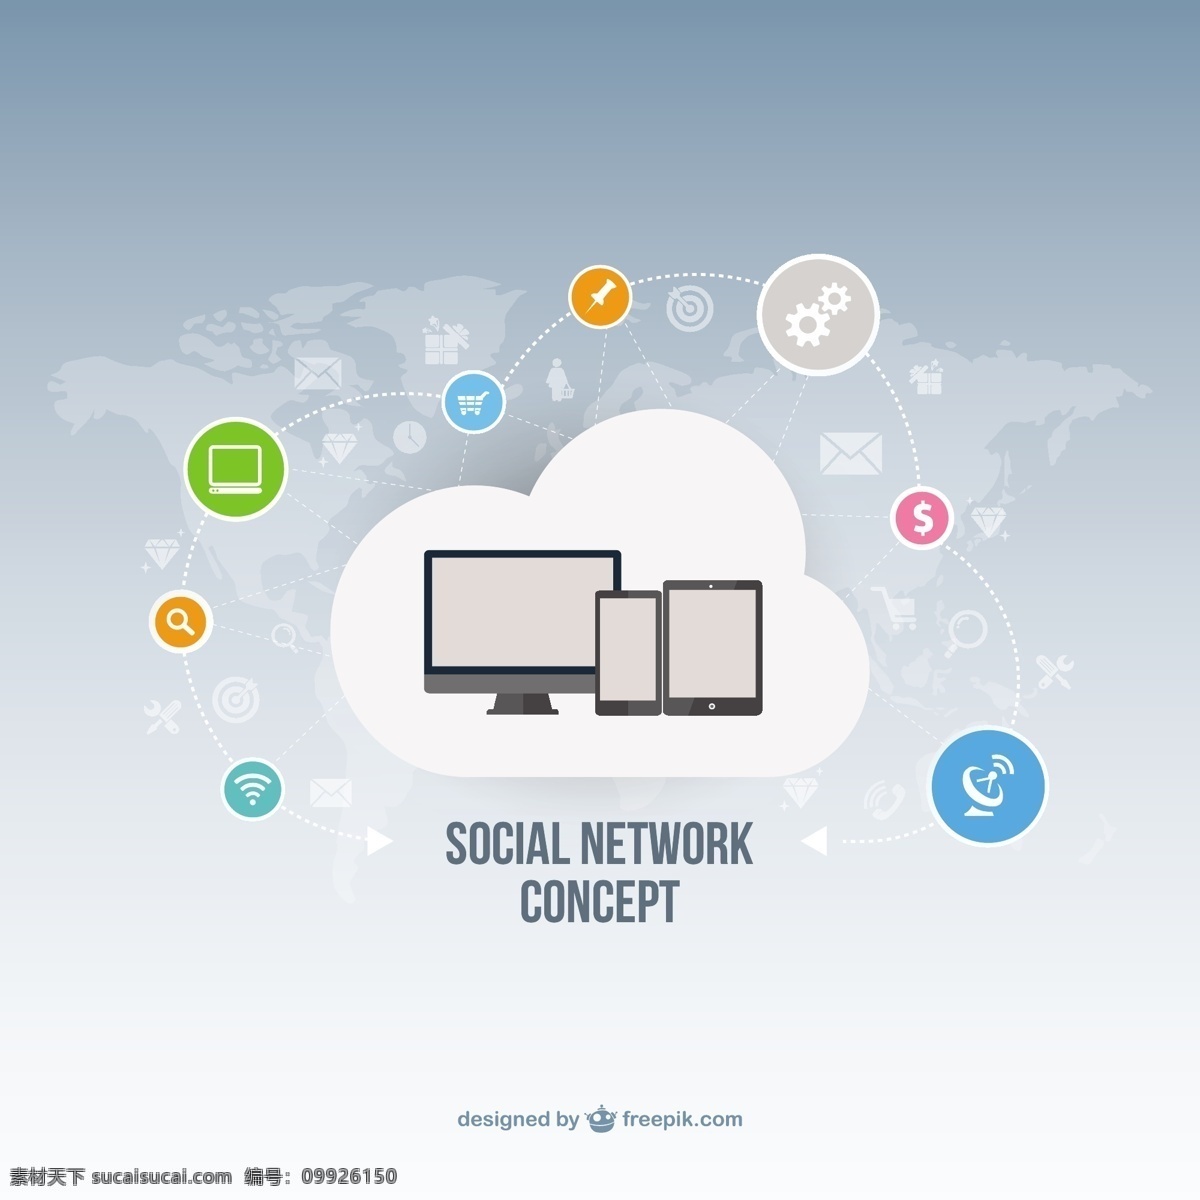 社会 网络 概念 图标 计算机 社交媒体 云 电话 技术 移动 社交 社交媒体图标 图形 平板电脑 手机图标 媒体 社交网络 移动电话 白色